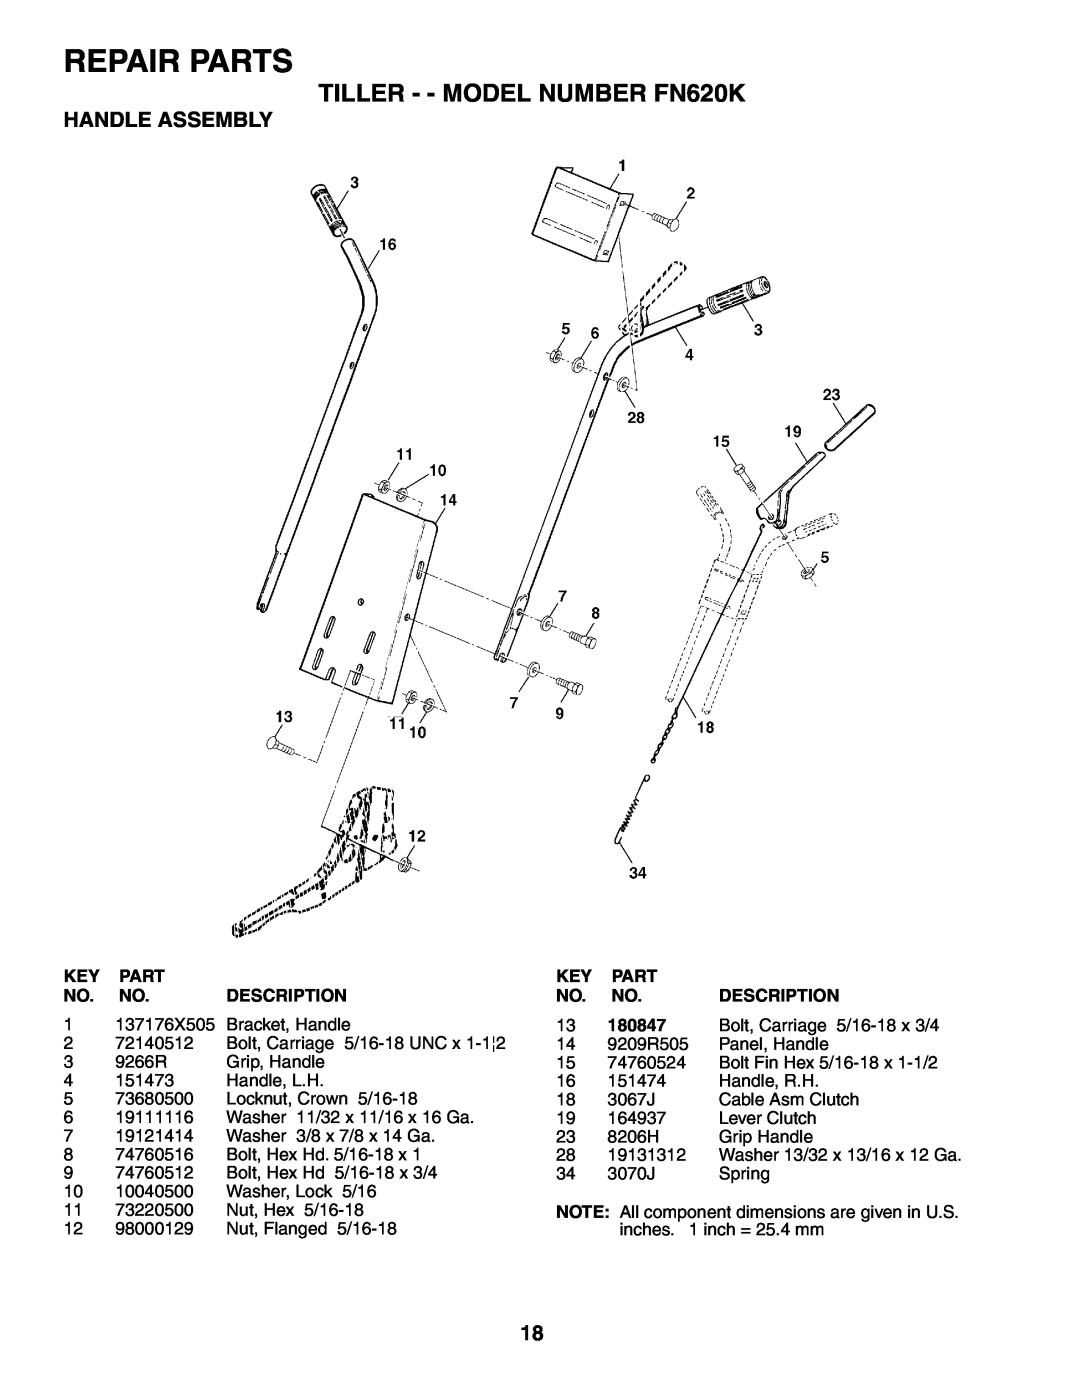 Electrolux owner manual Repair Parts, TILLER - - MODEL NUMBER FN620K, Handle Assembly 